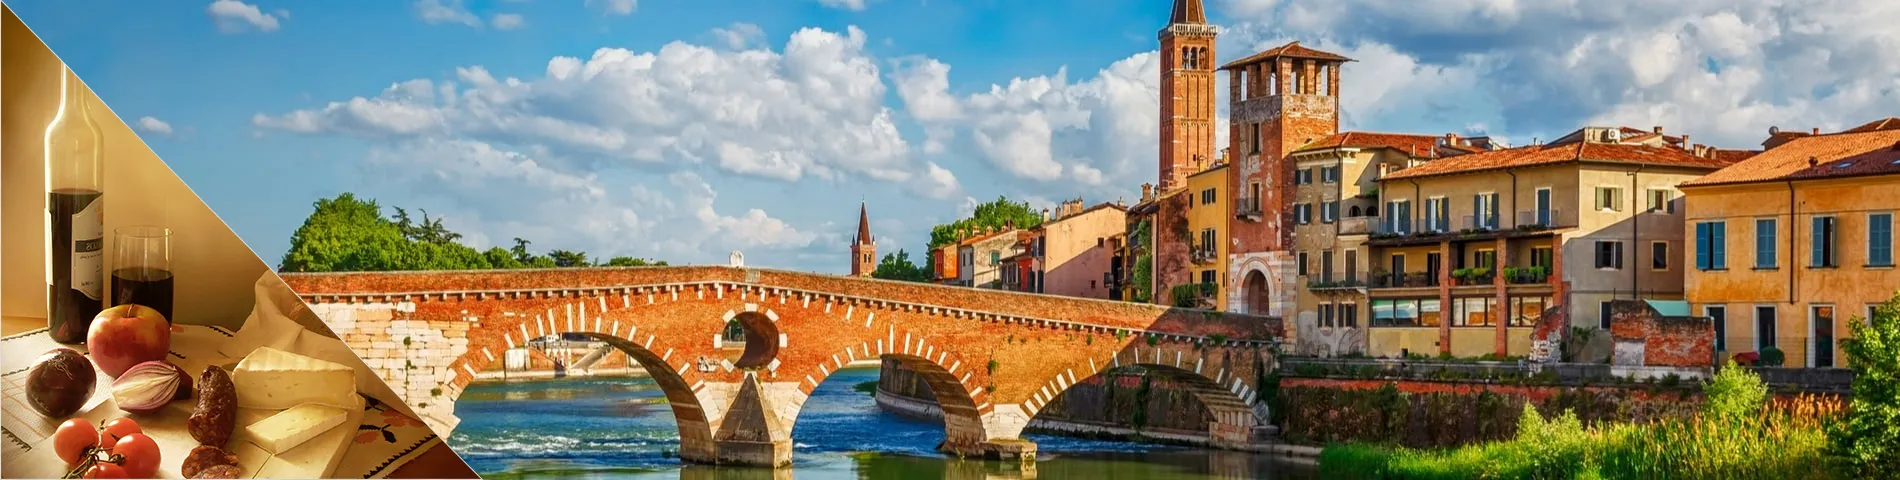 Verona - Italiano & Cultura